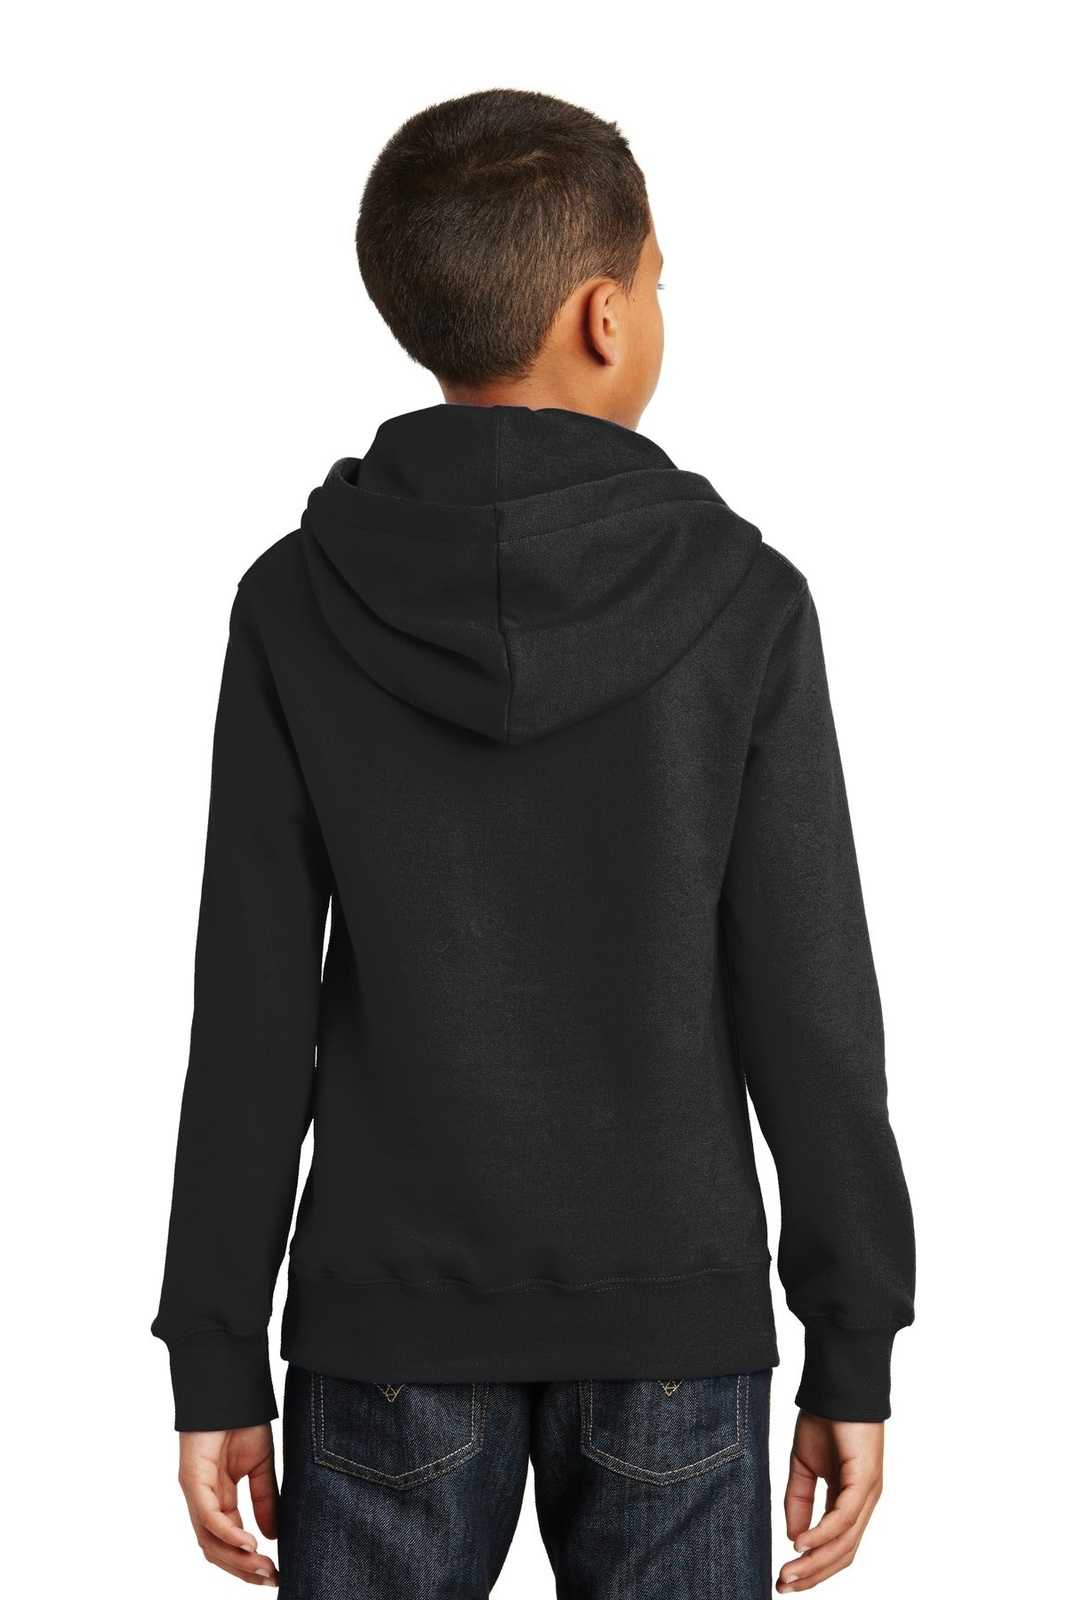 Port & Company PC850YH Youth Fan Favorite Fleece Pullover Hooded Sweatshirt - Jet Black - HIT a Double - 1